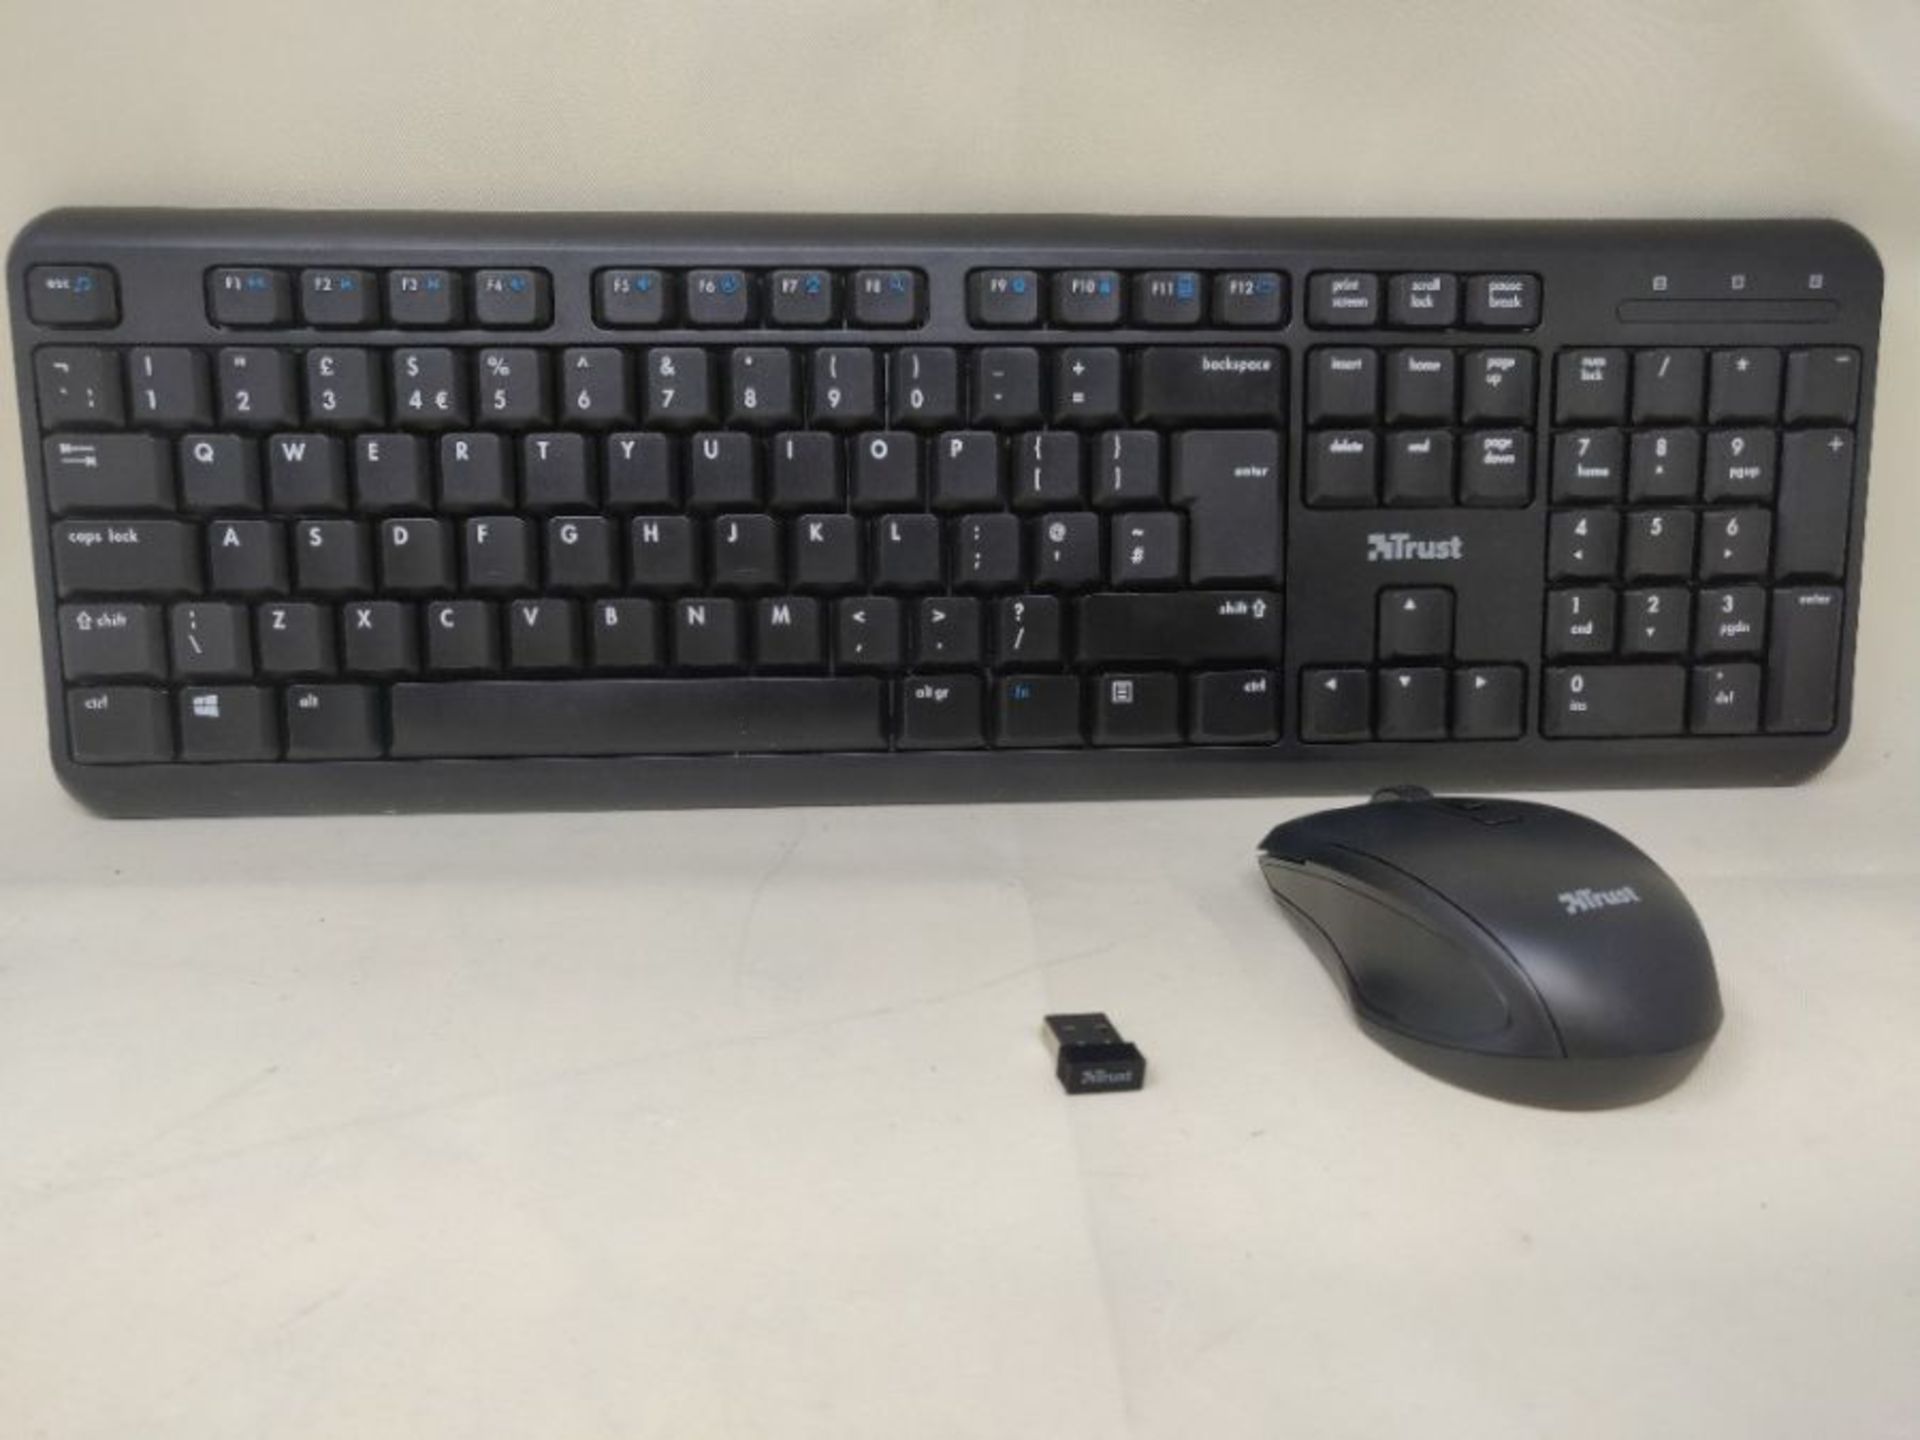 Trust Ymo Wireless Keyboard and Mouse Set -Qwerty UK Layout, Silent Keys, Full-Size Ke - Image 2 of 2